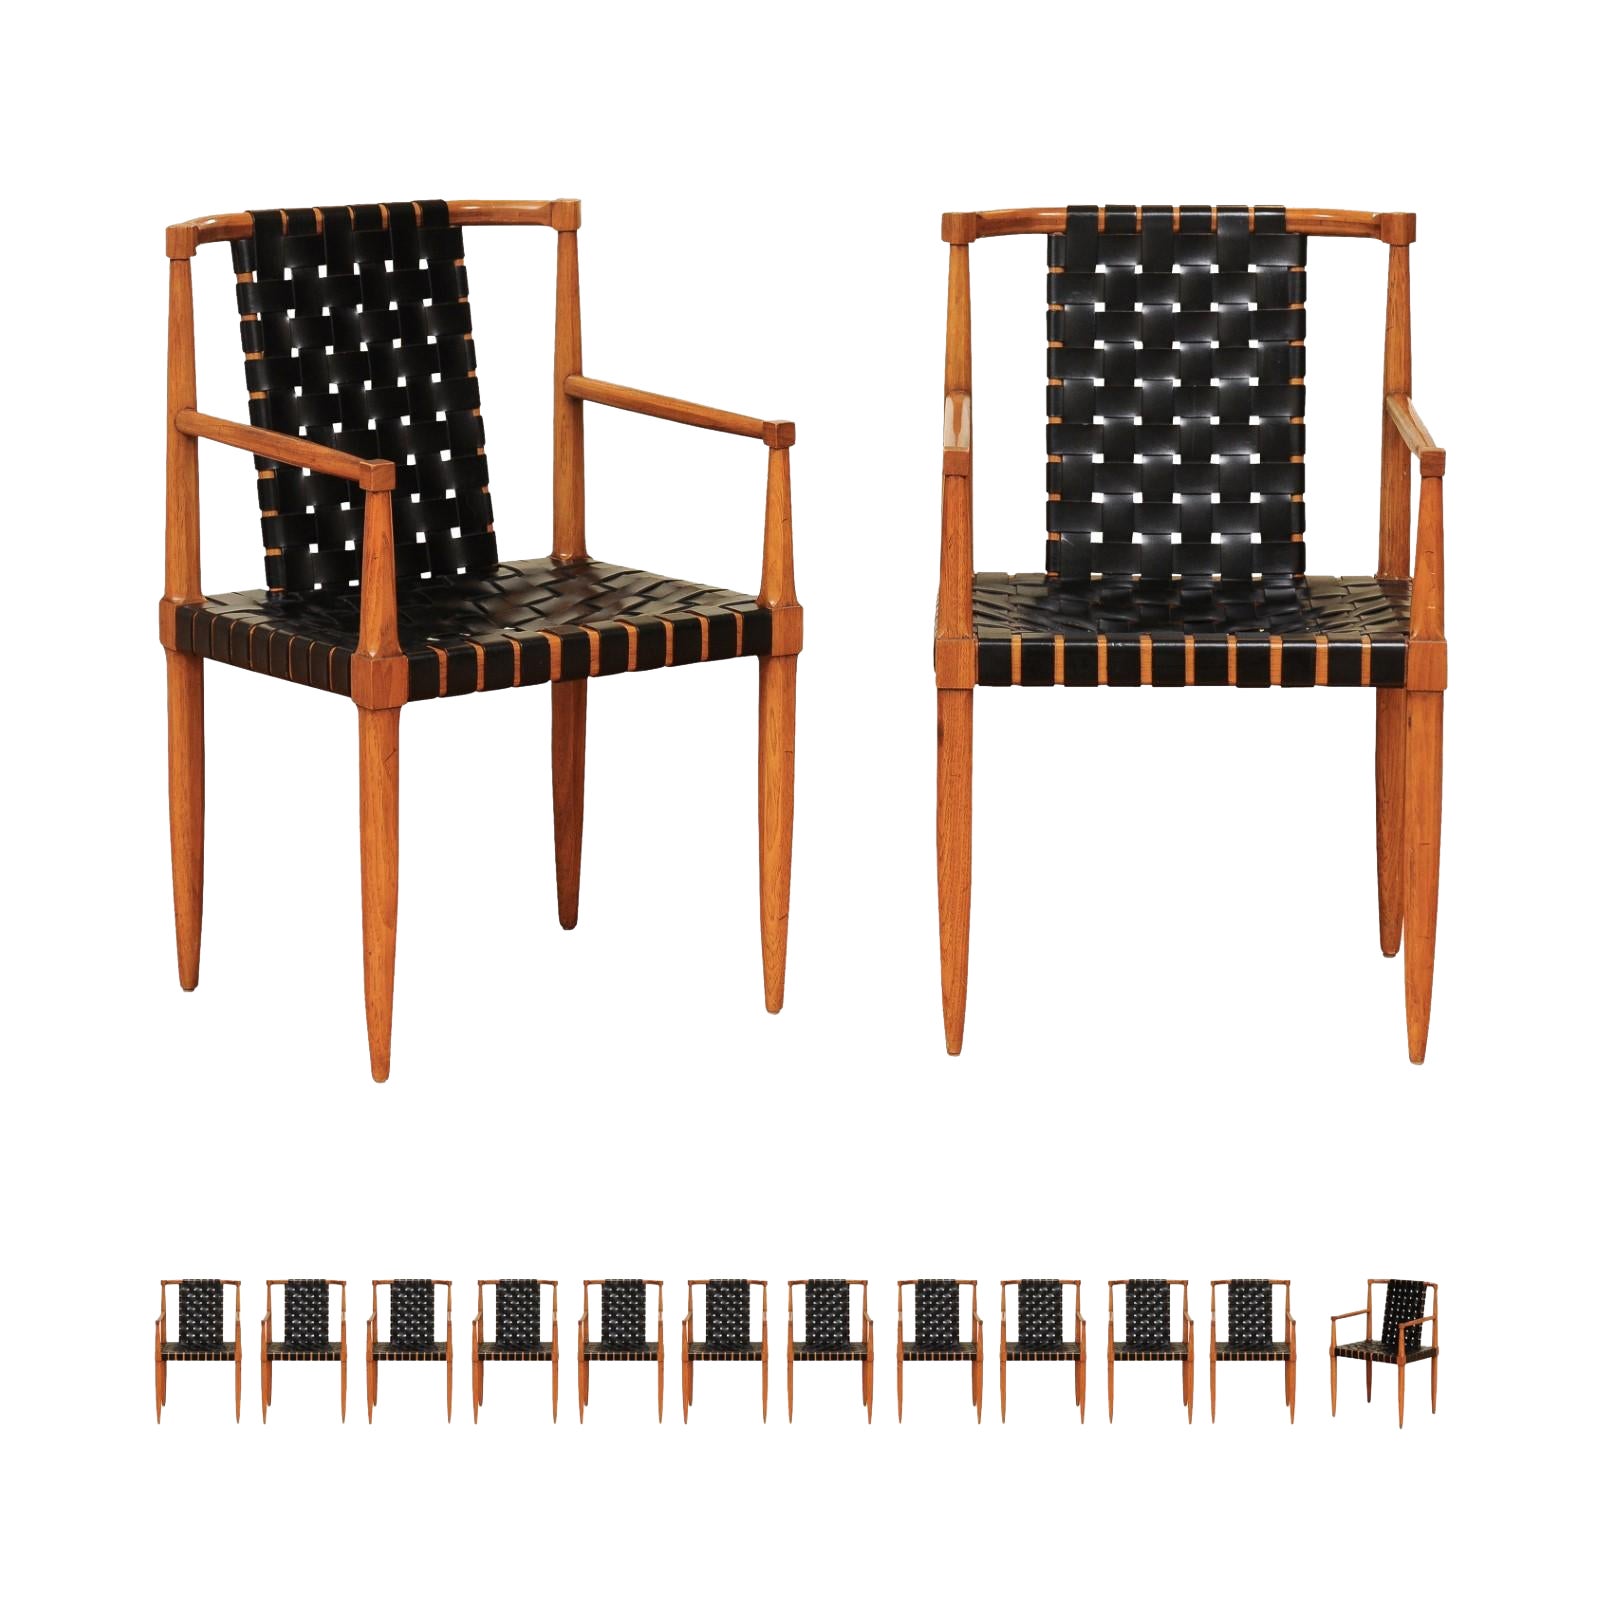 Ensemble miraculeux de 14 chaises ARM à sangles en cuir danois en noyer d'époque, par Tomlinson